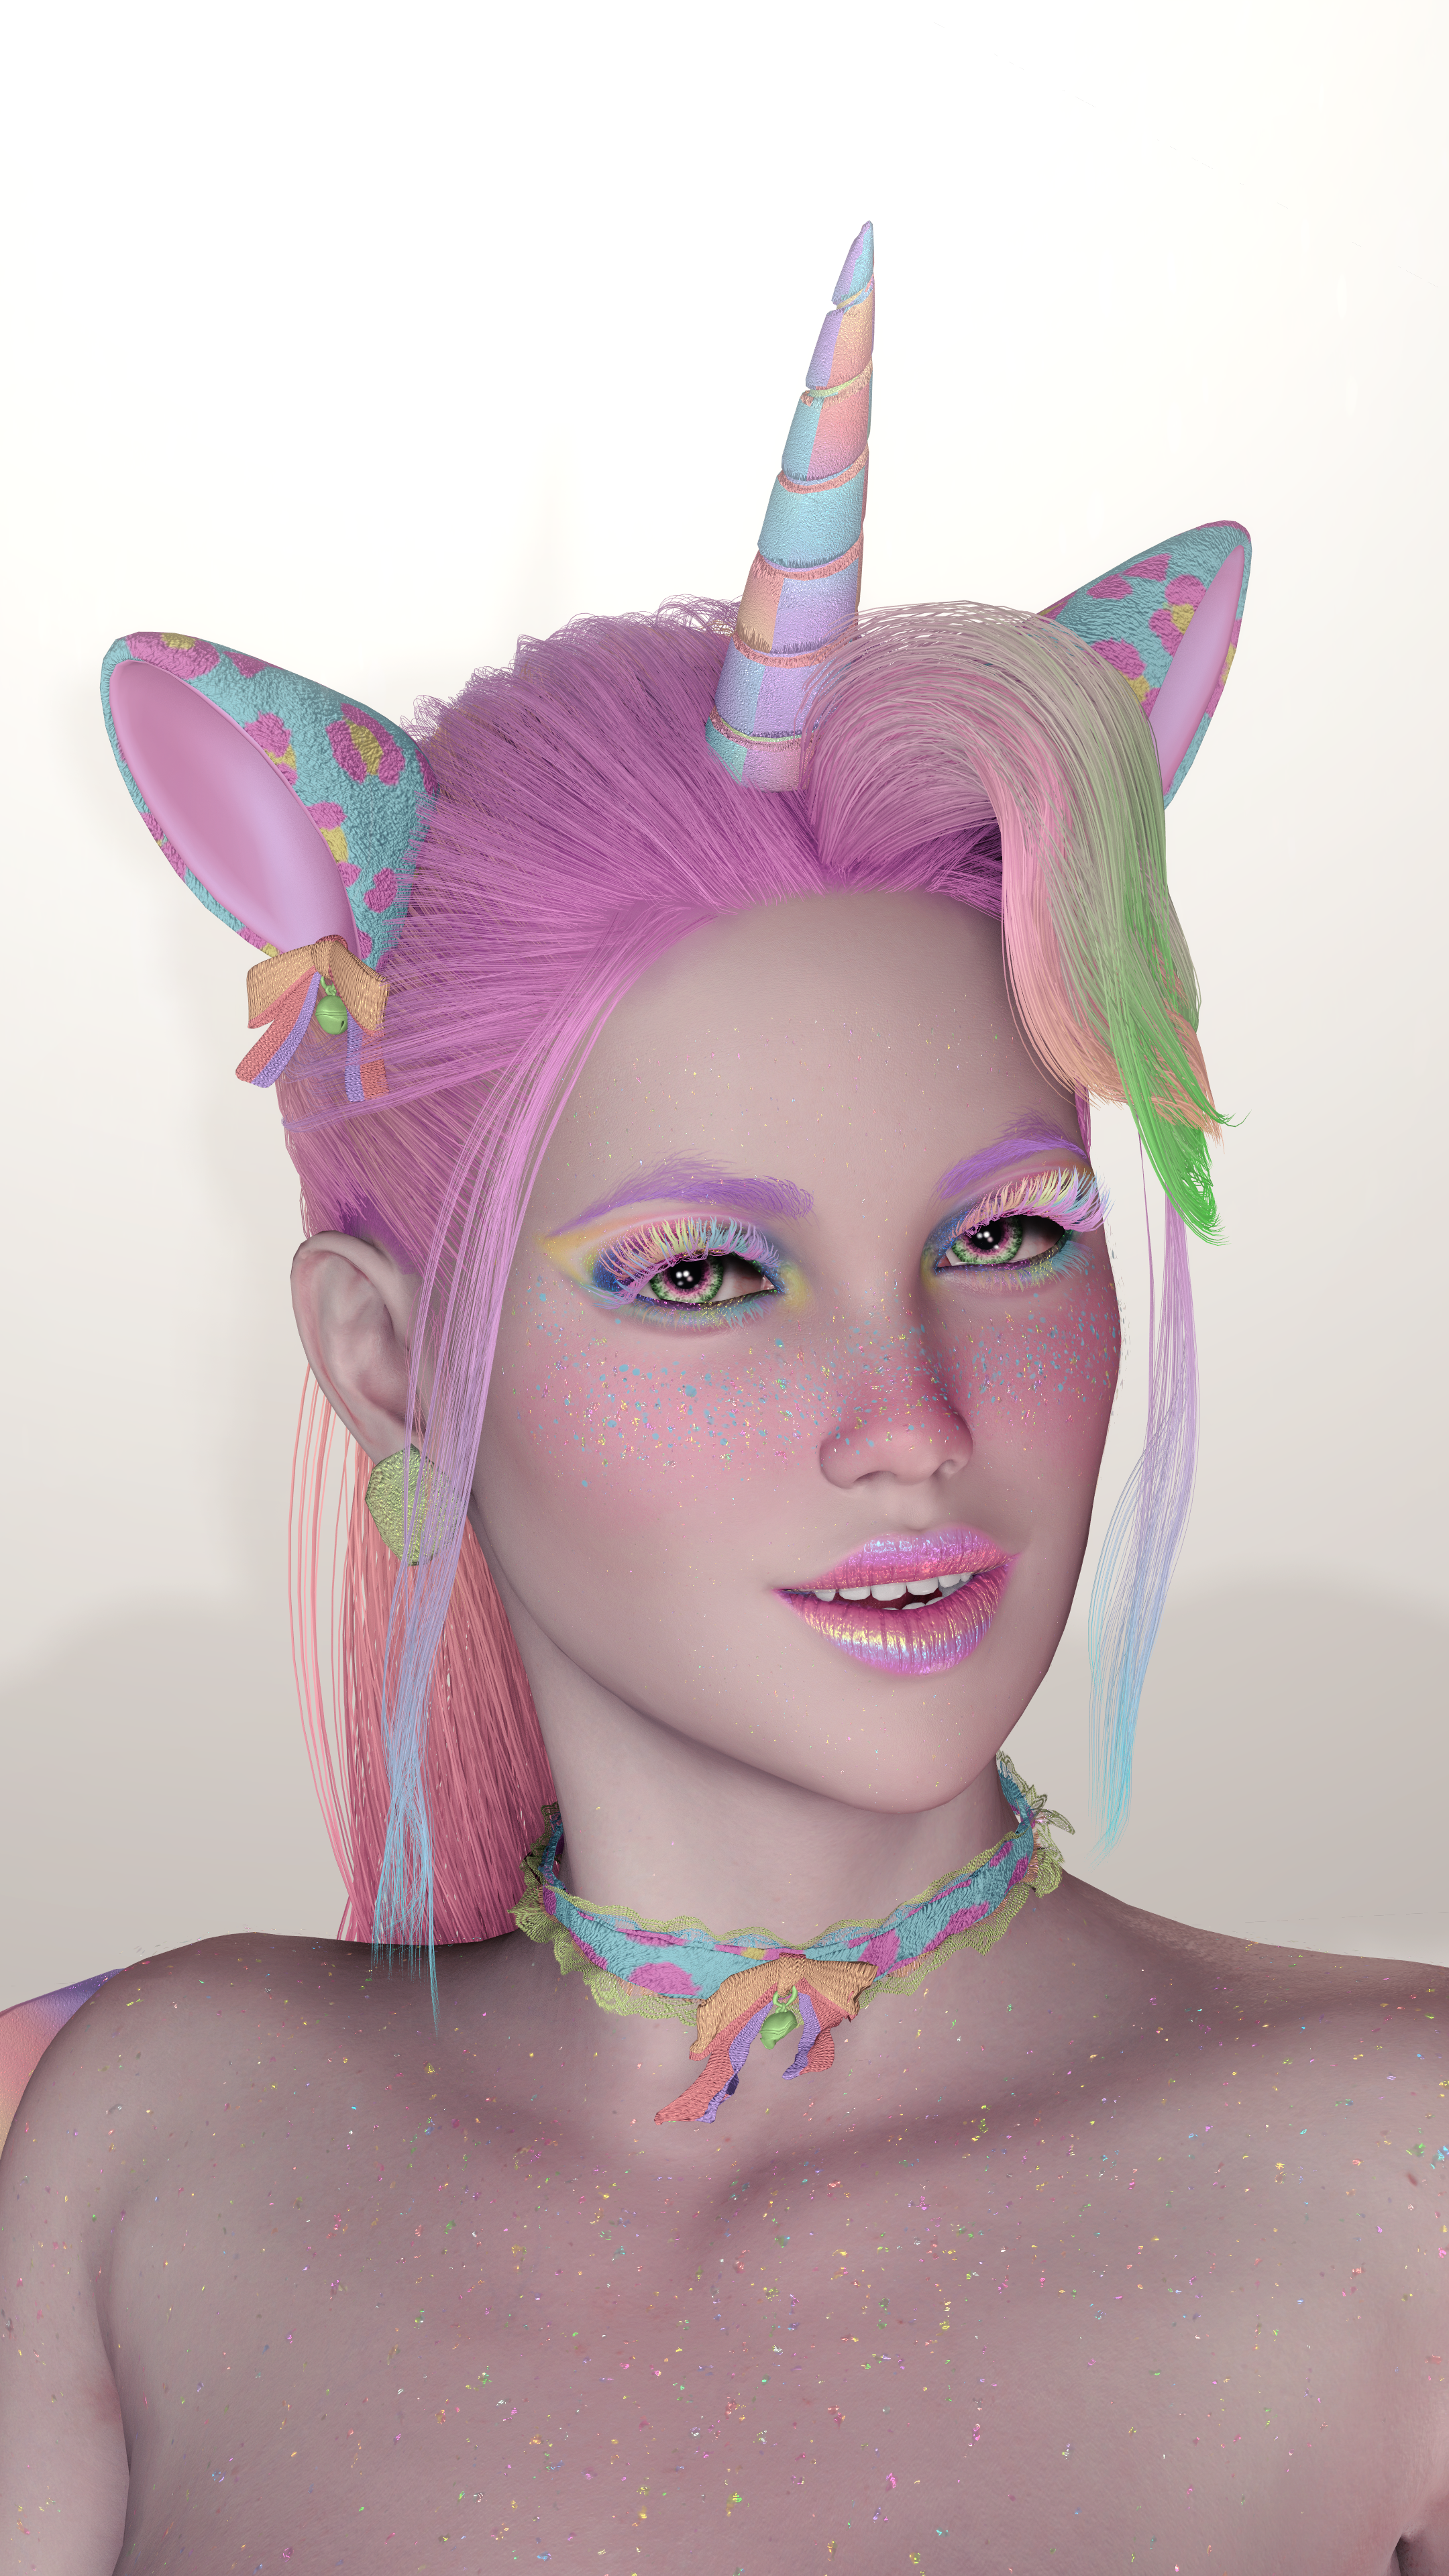 Crystal Doll{ Kittycorn Cosplayer! #KittycornDreamer #PastelPrincess #unicornsarereal